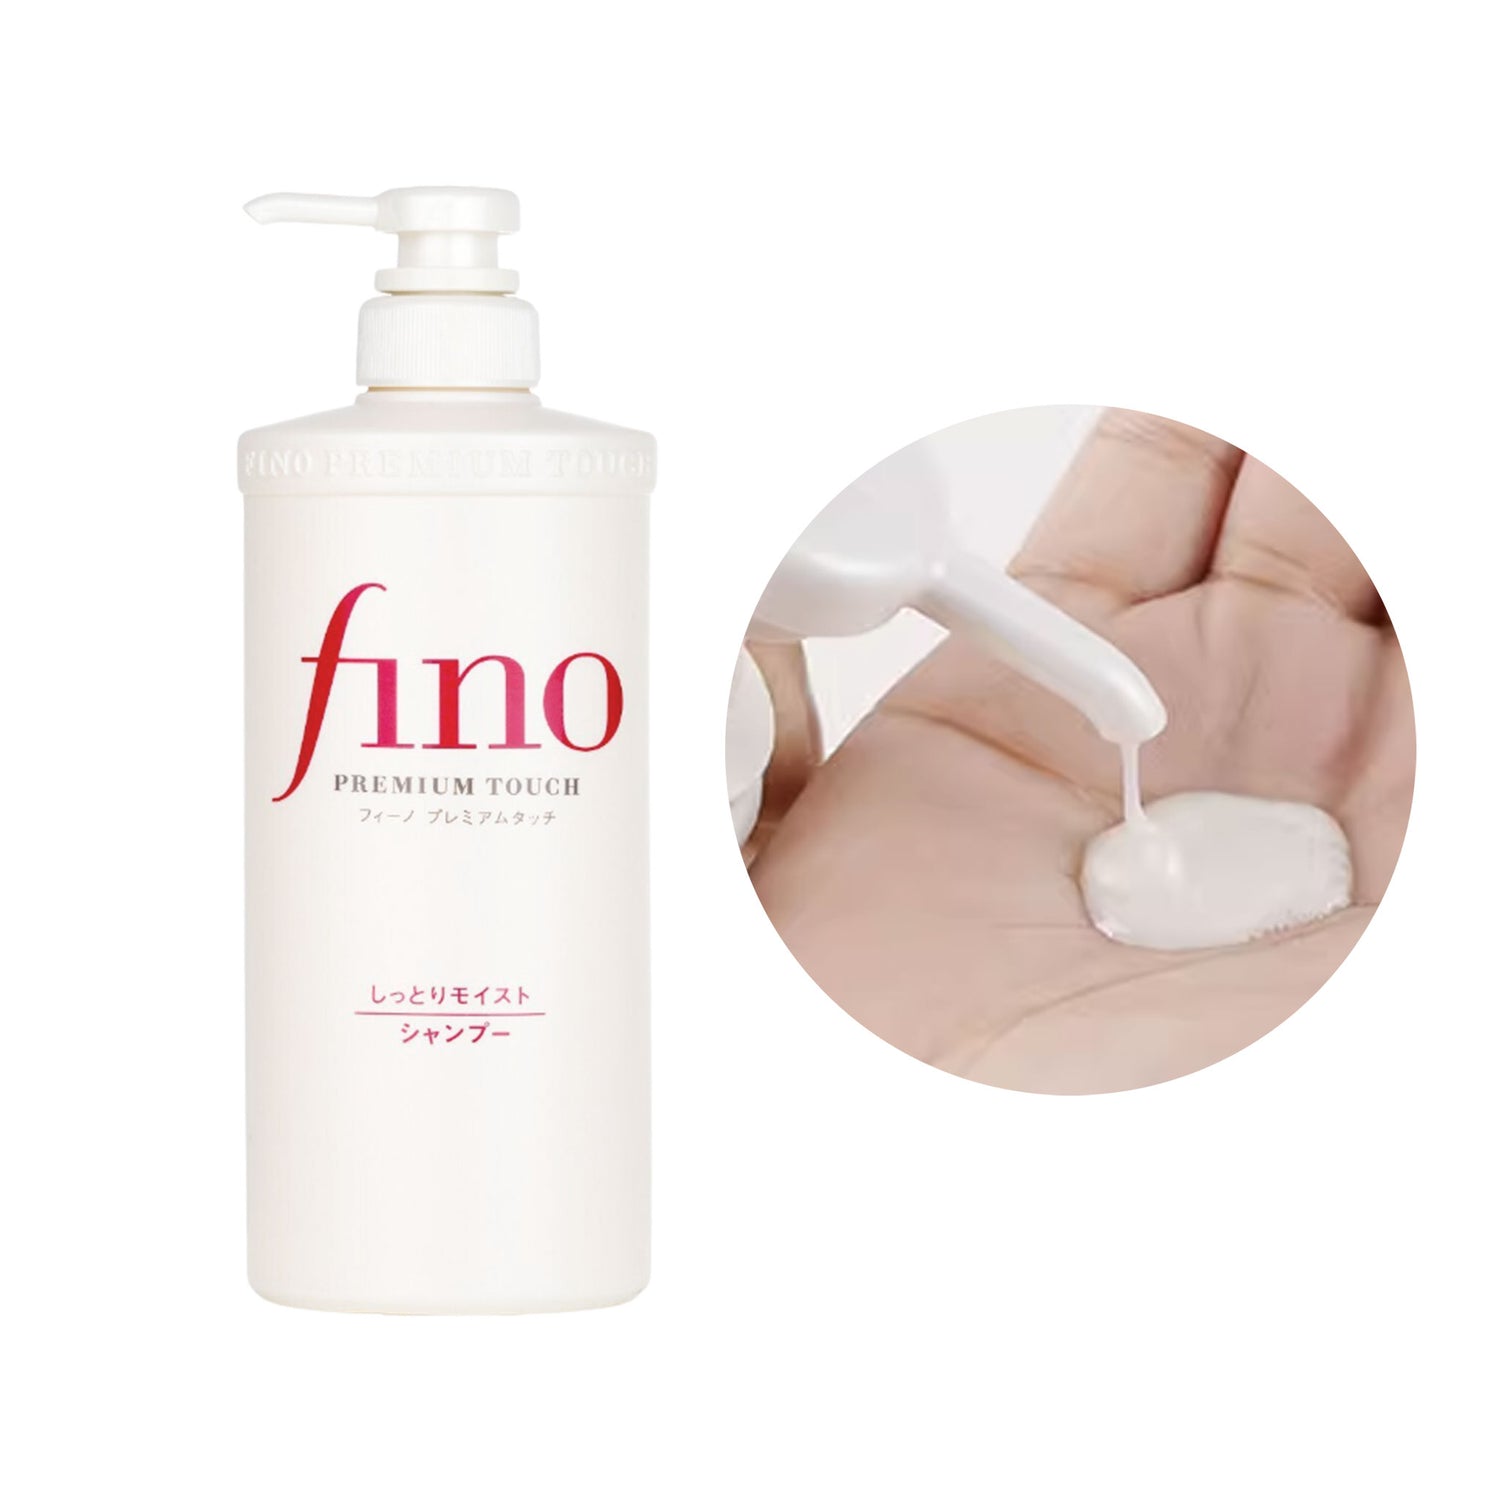 SHISEIDO Fino Premium Touch Moist Shampoo 550ml